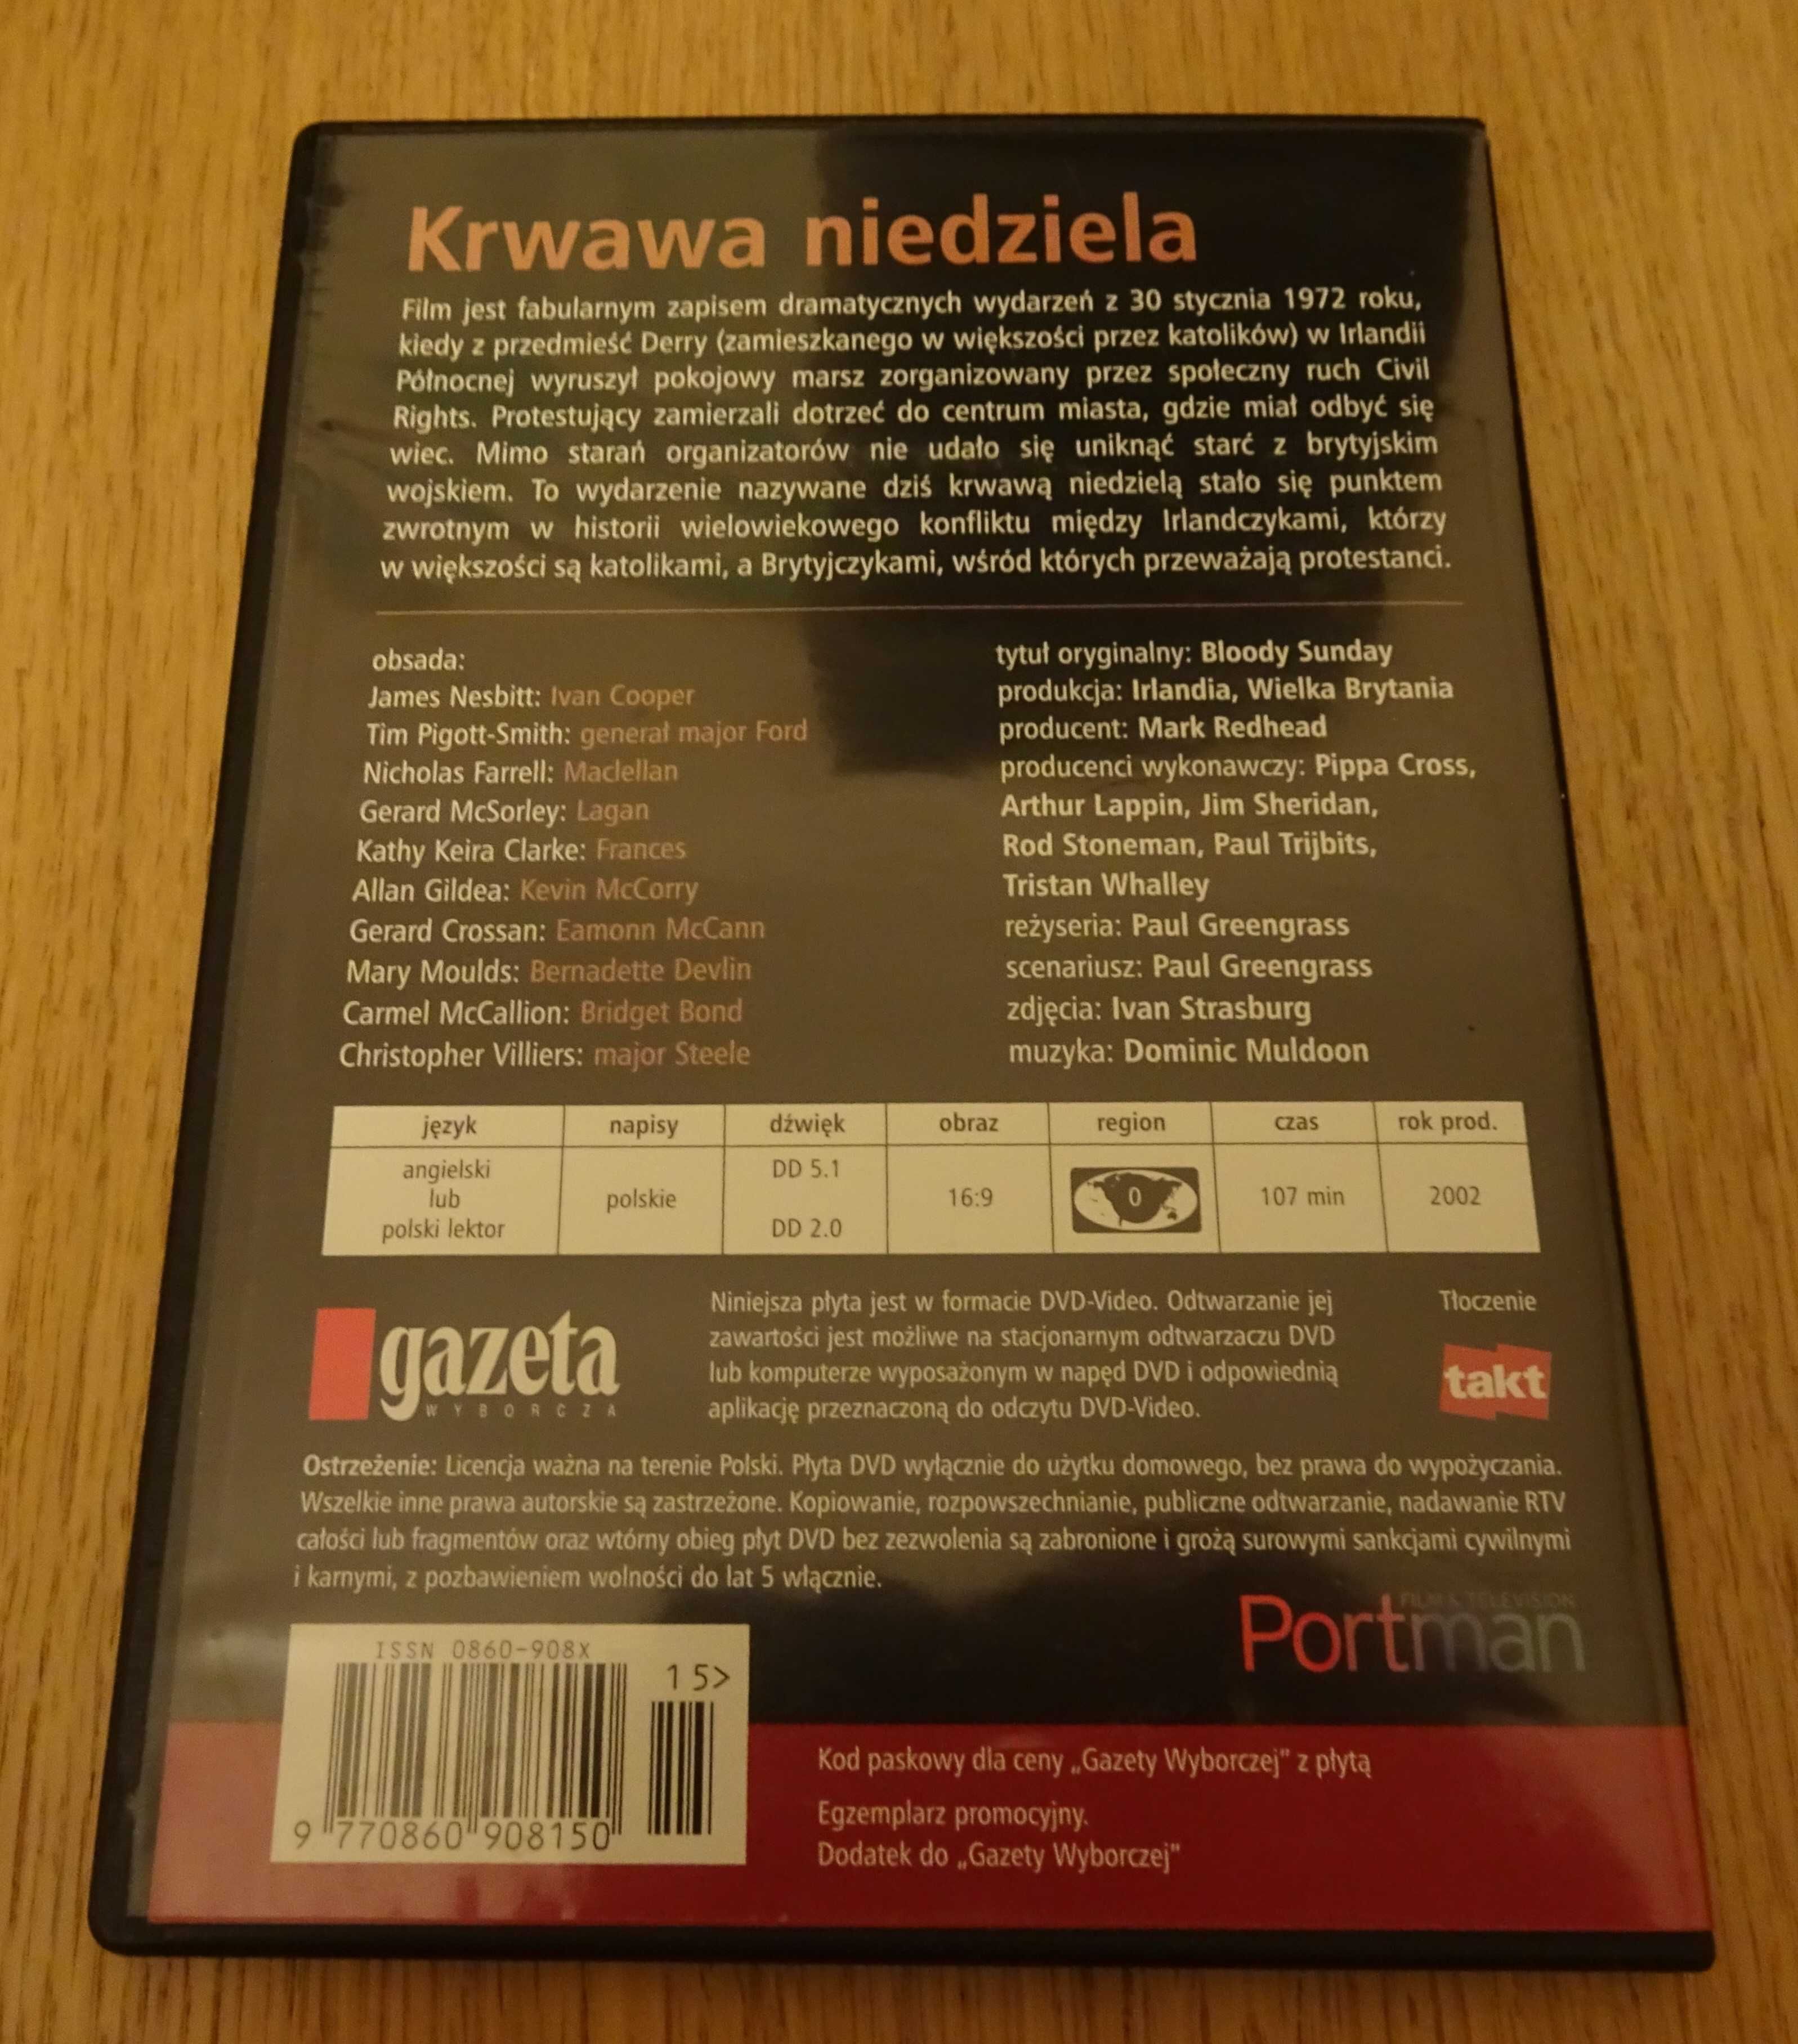 "Krwawa niedziela" film dvd, płyta dvd